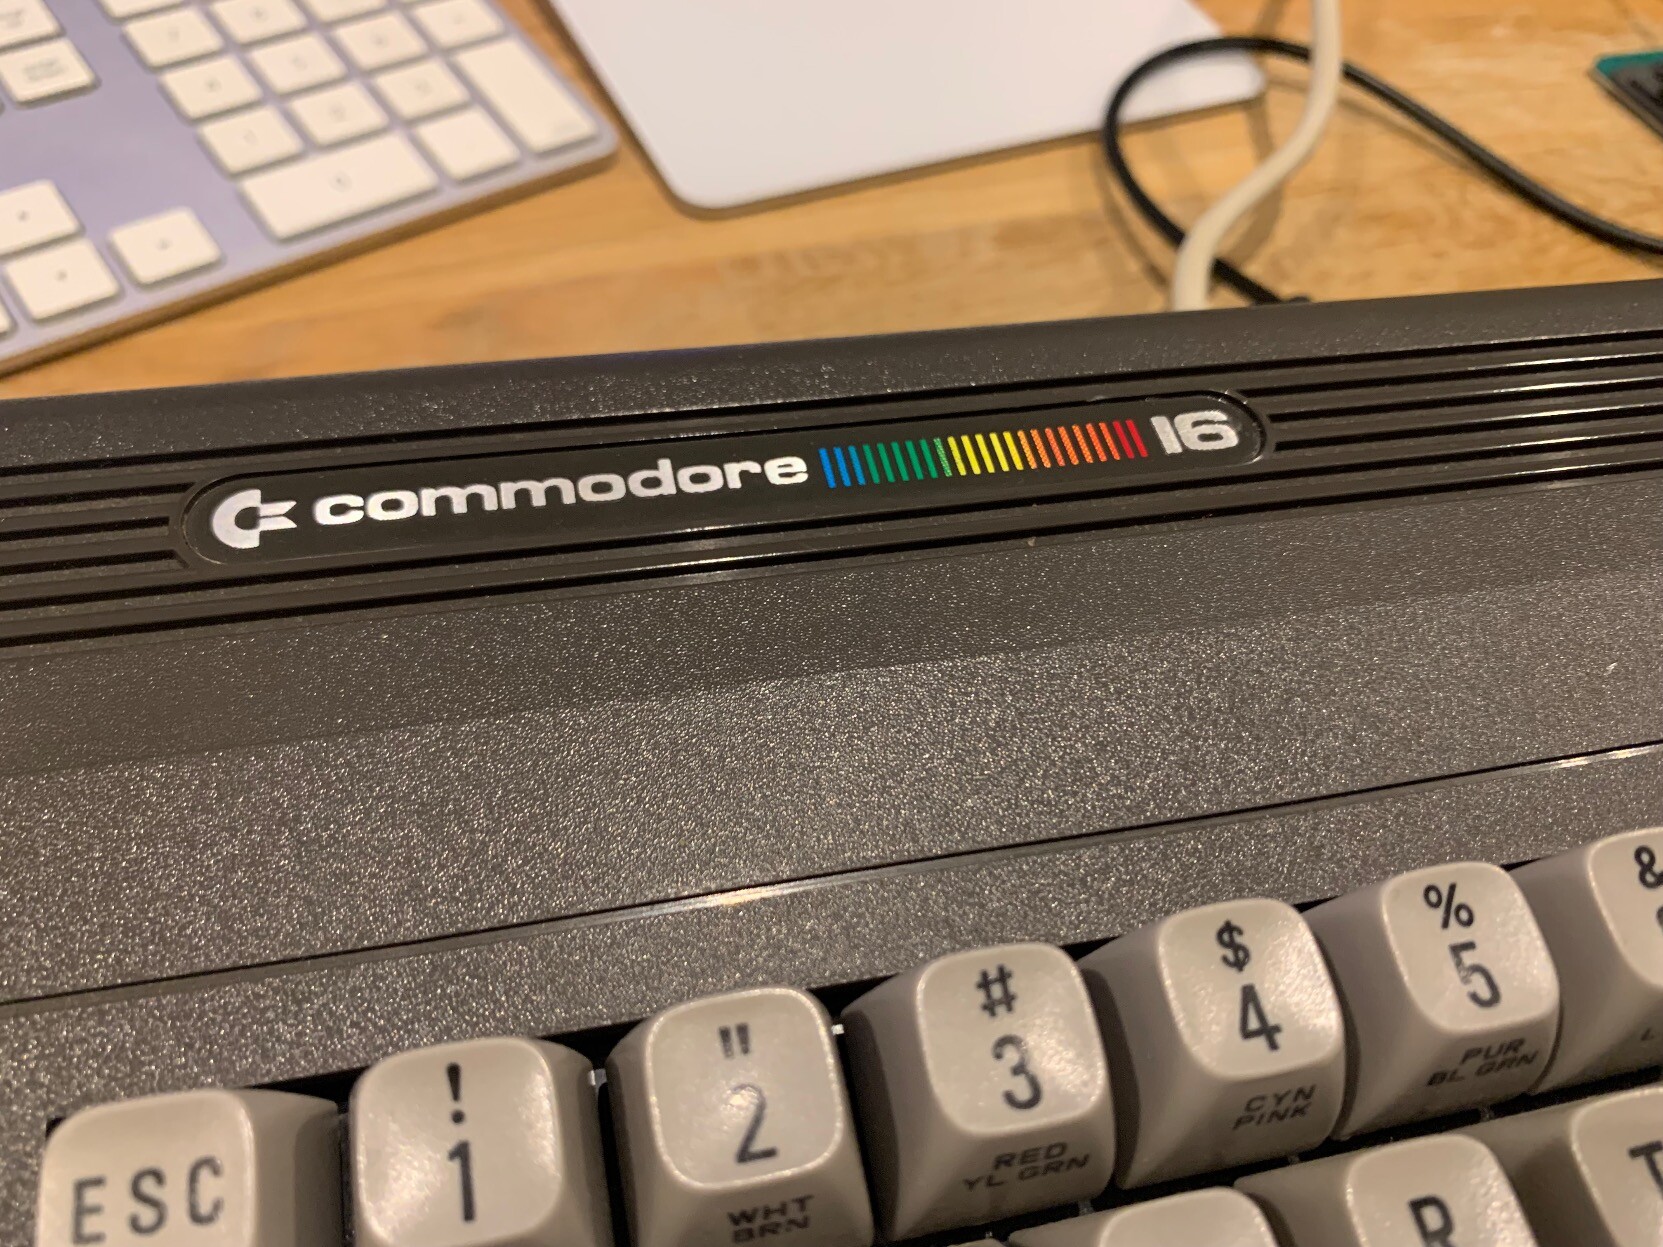 Commodore 16 logo